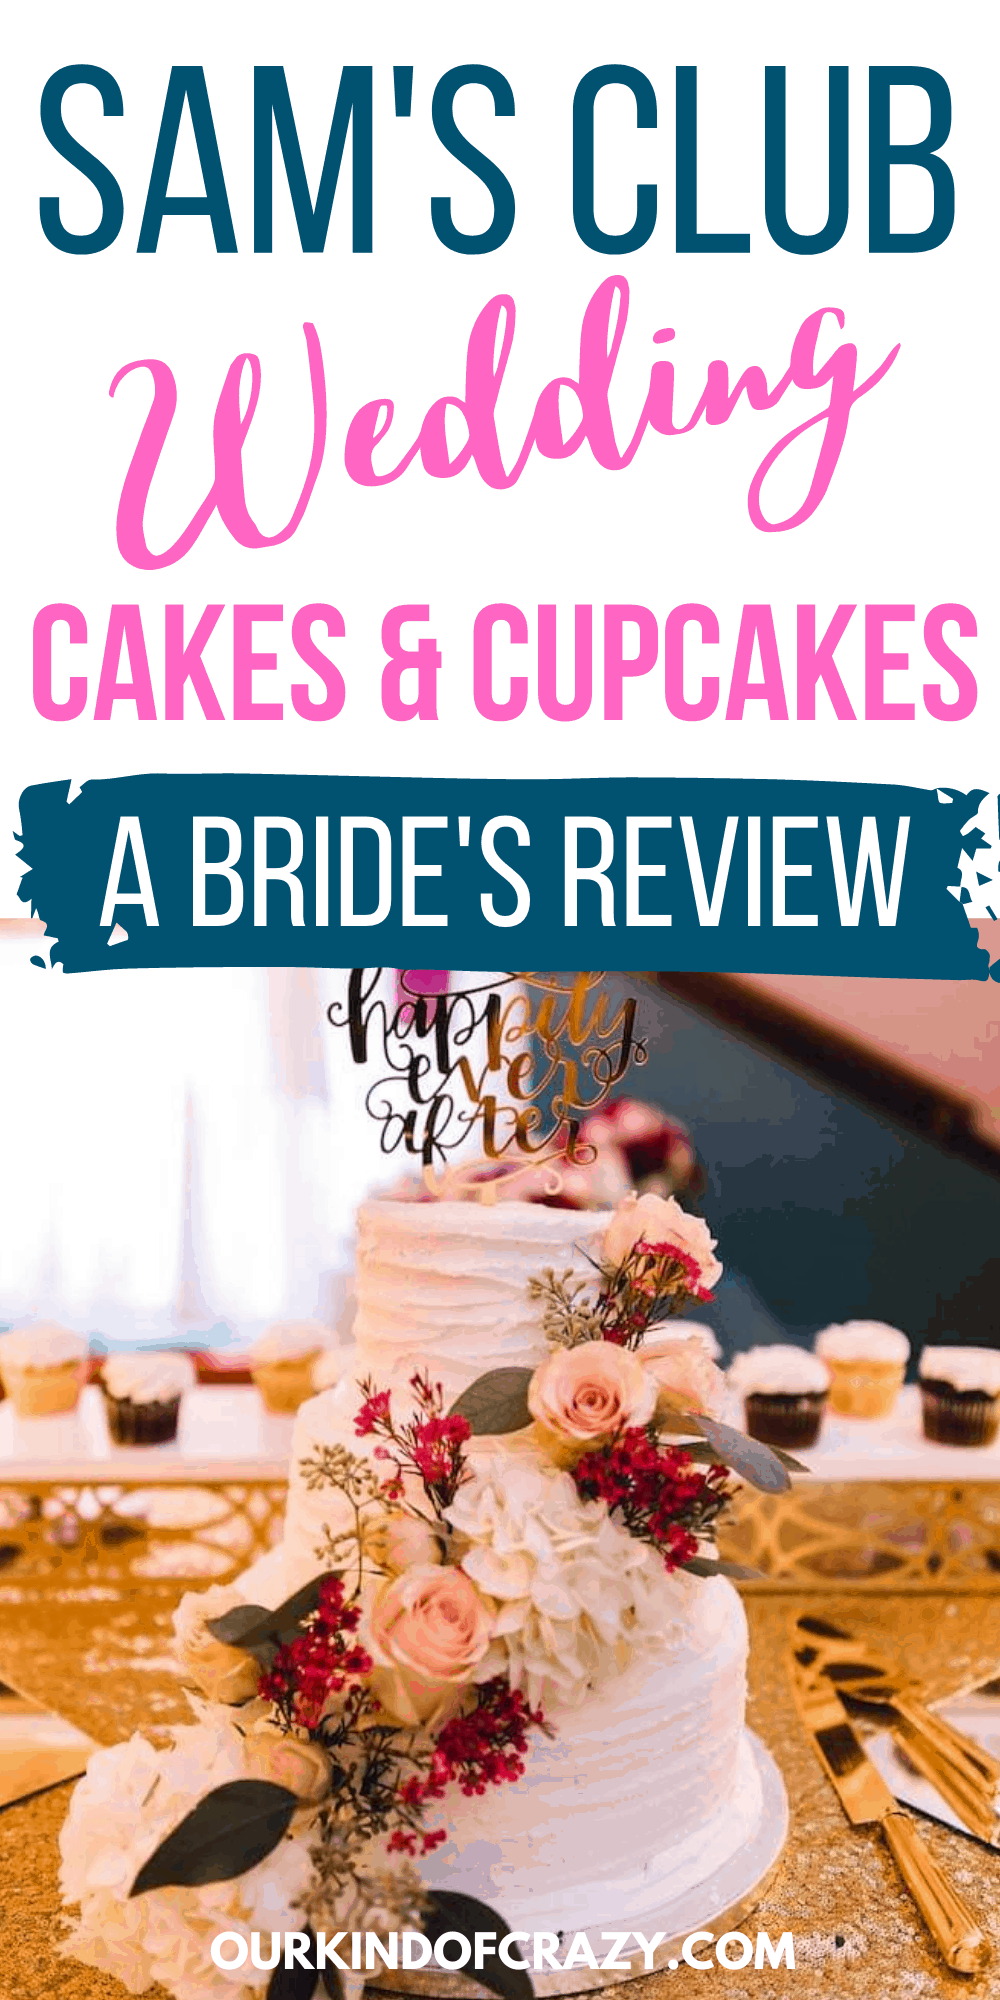 Sam's Club Wedding Cakes & Cupcakes : A Bride's Review